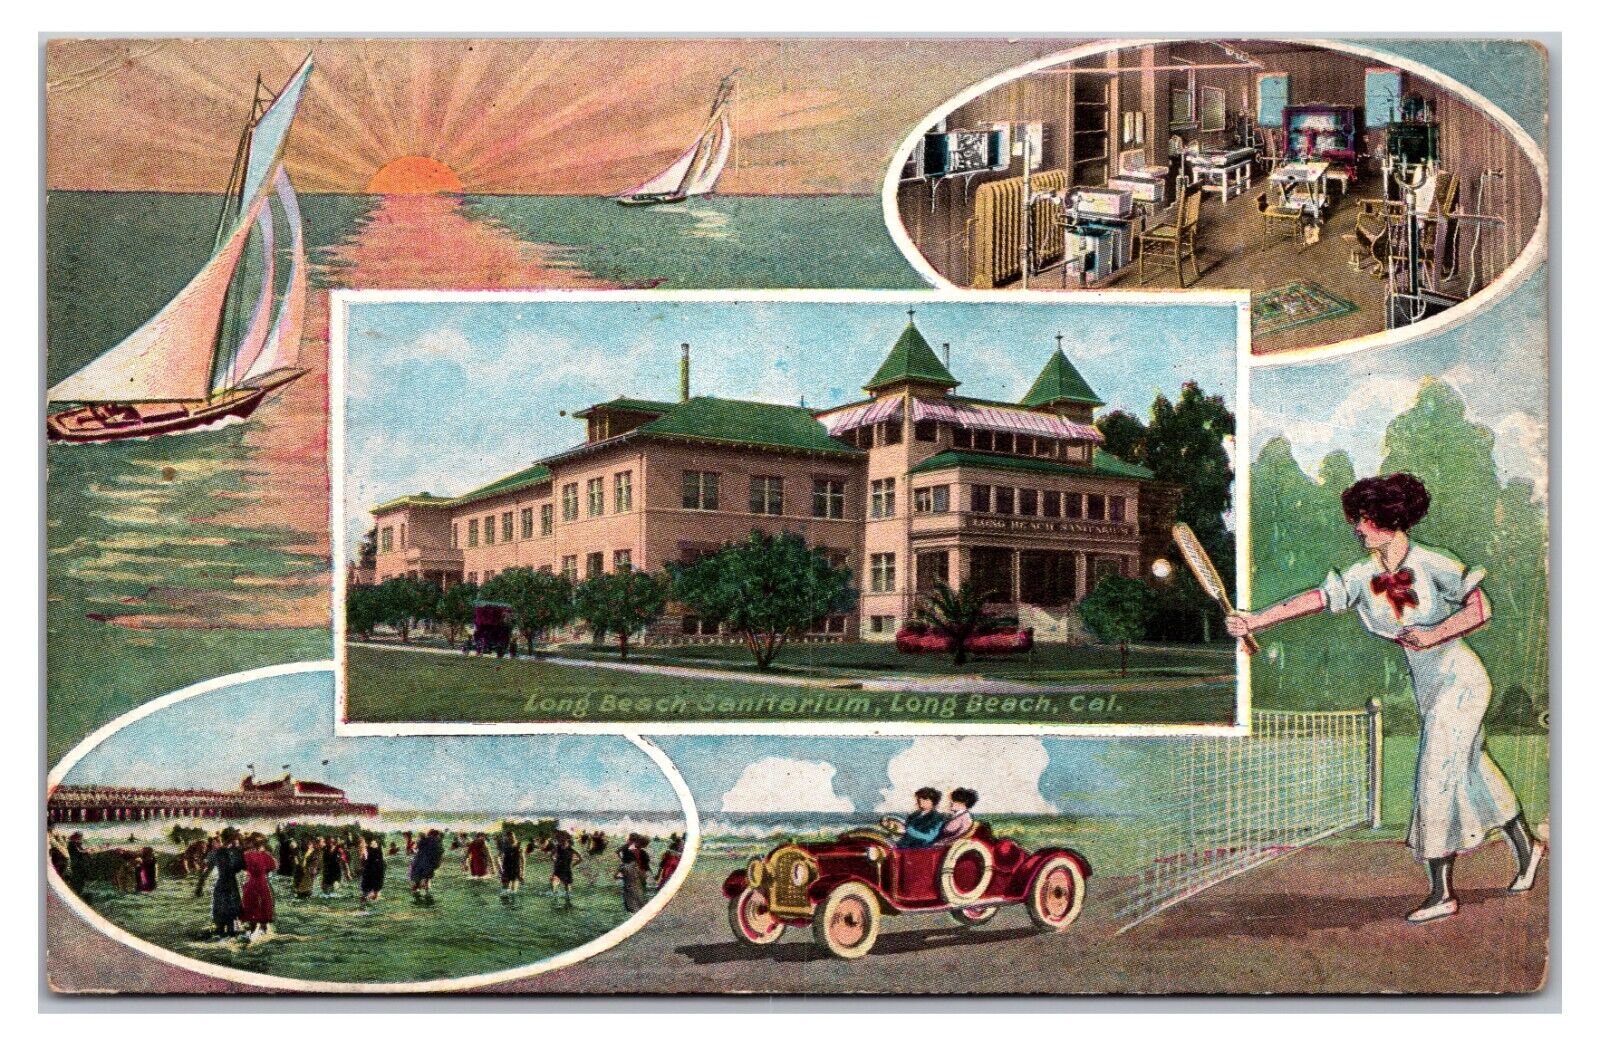 VTG 1910s - Long Beach Sanitarium - Long Beach, California Postcard (UnPosted)